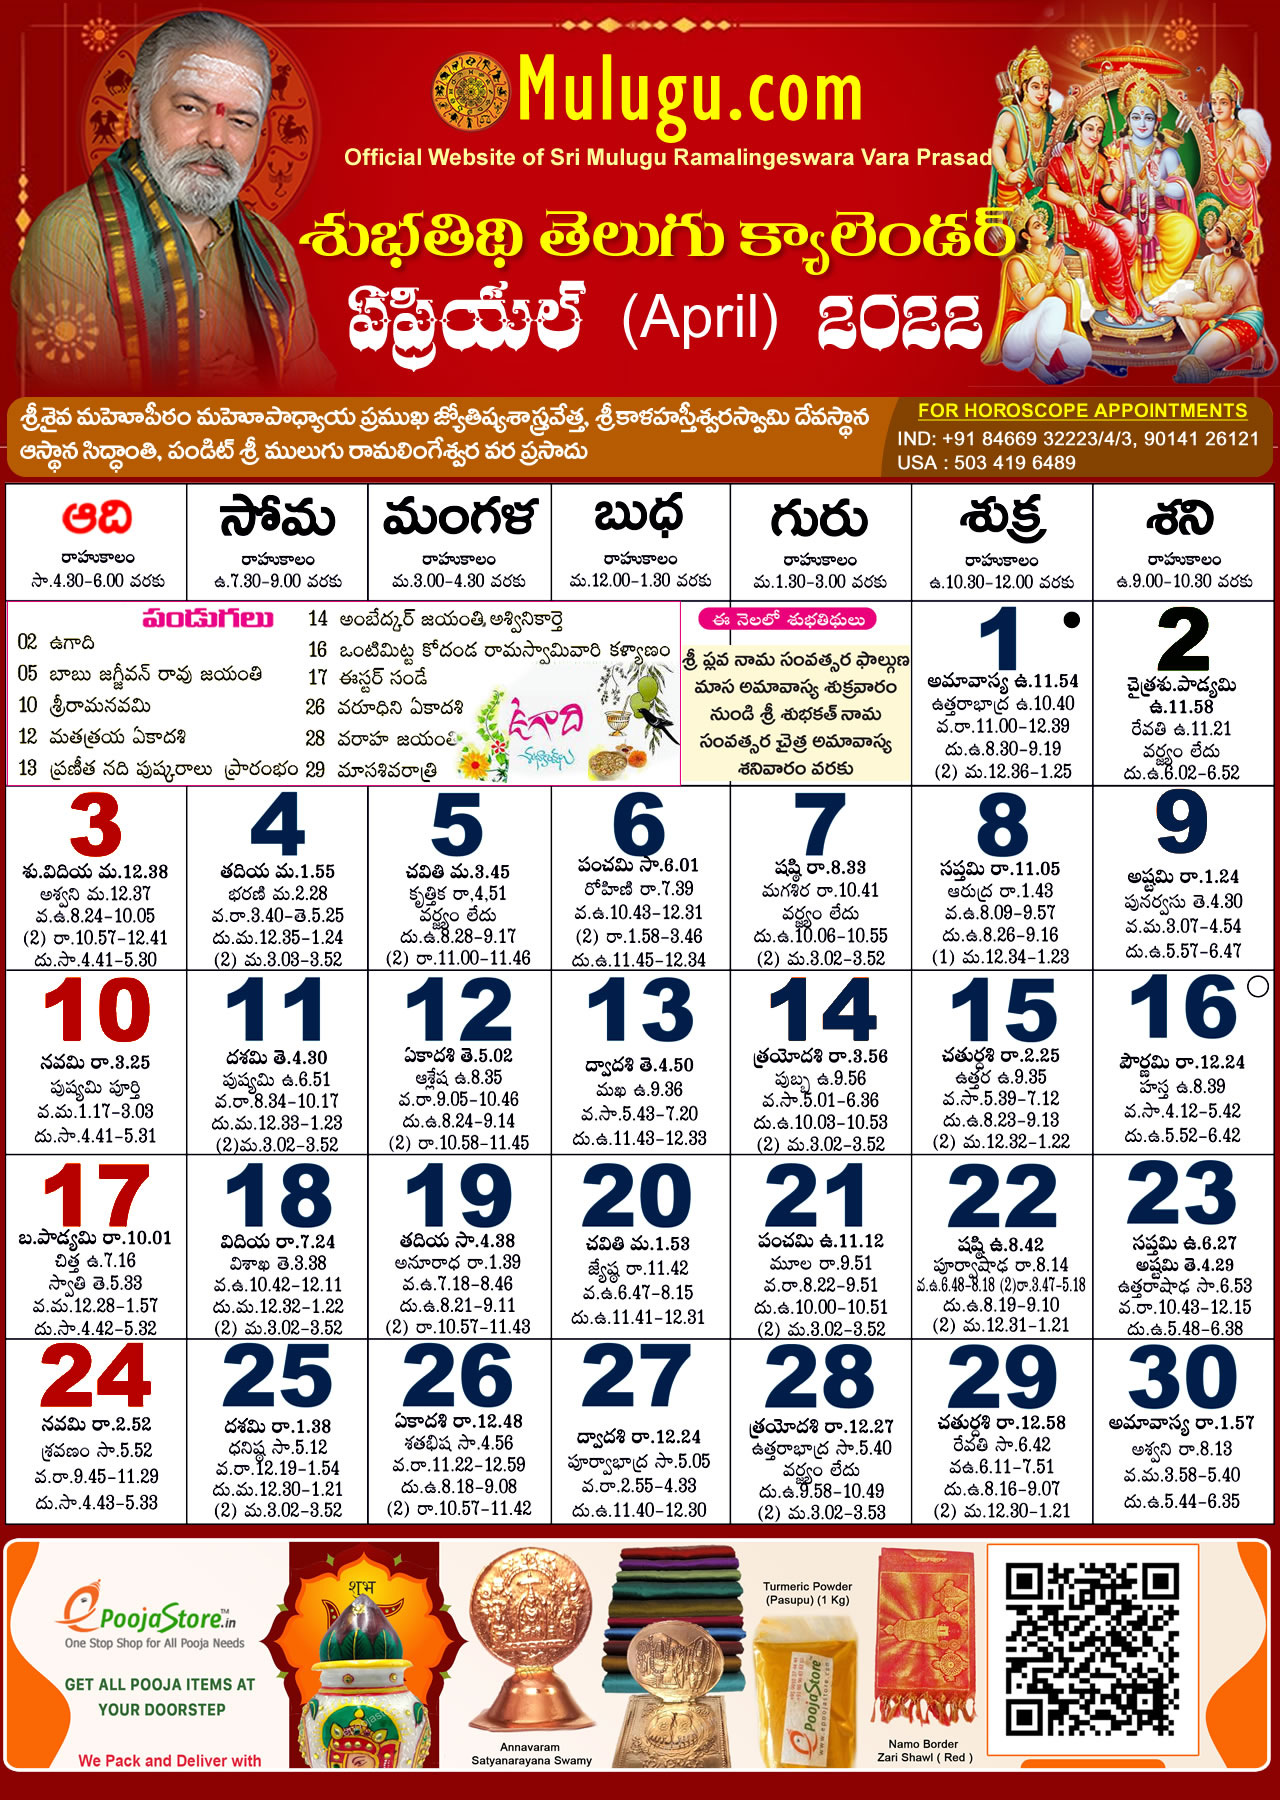 Telugu Calendar 2022 California Subhathidi April Telugu Calendar 2022 | Telugu Calendar 2022 - 2023 | Telugu  Subhathidi Calendar 2022 | Calendar 2022 | Telugu Calendar 2022 |  Subhathidi Calendar 2022 | Chicago Calendar 2022 |